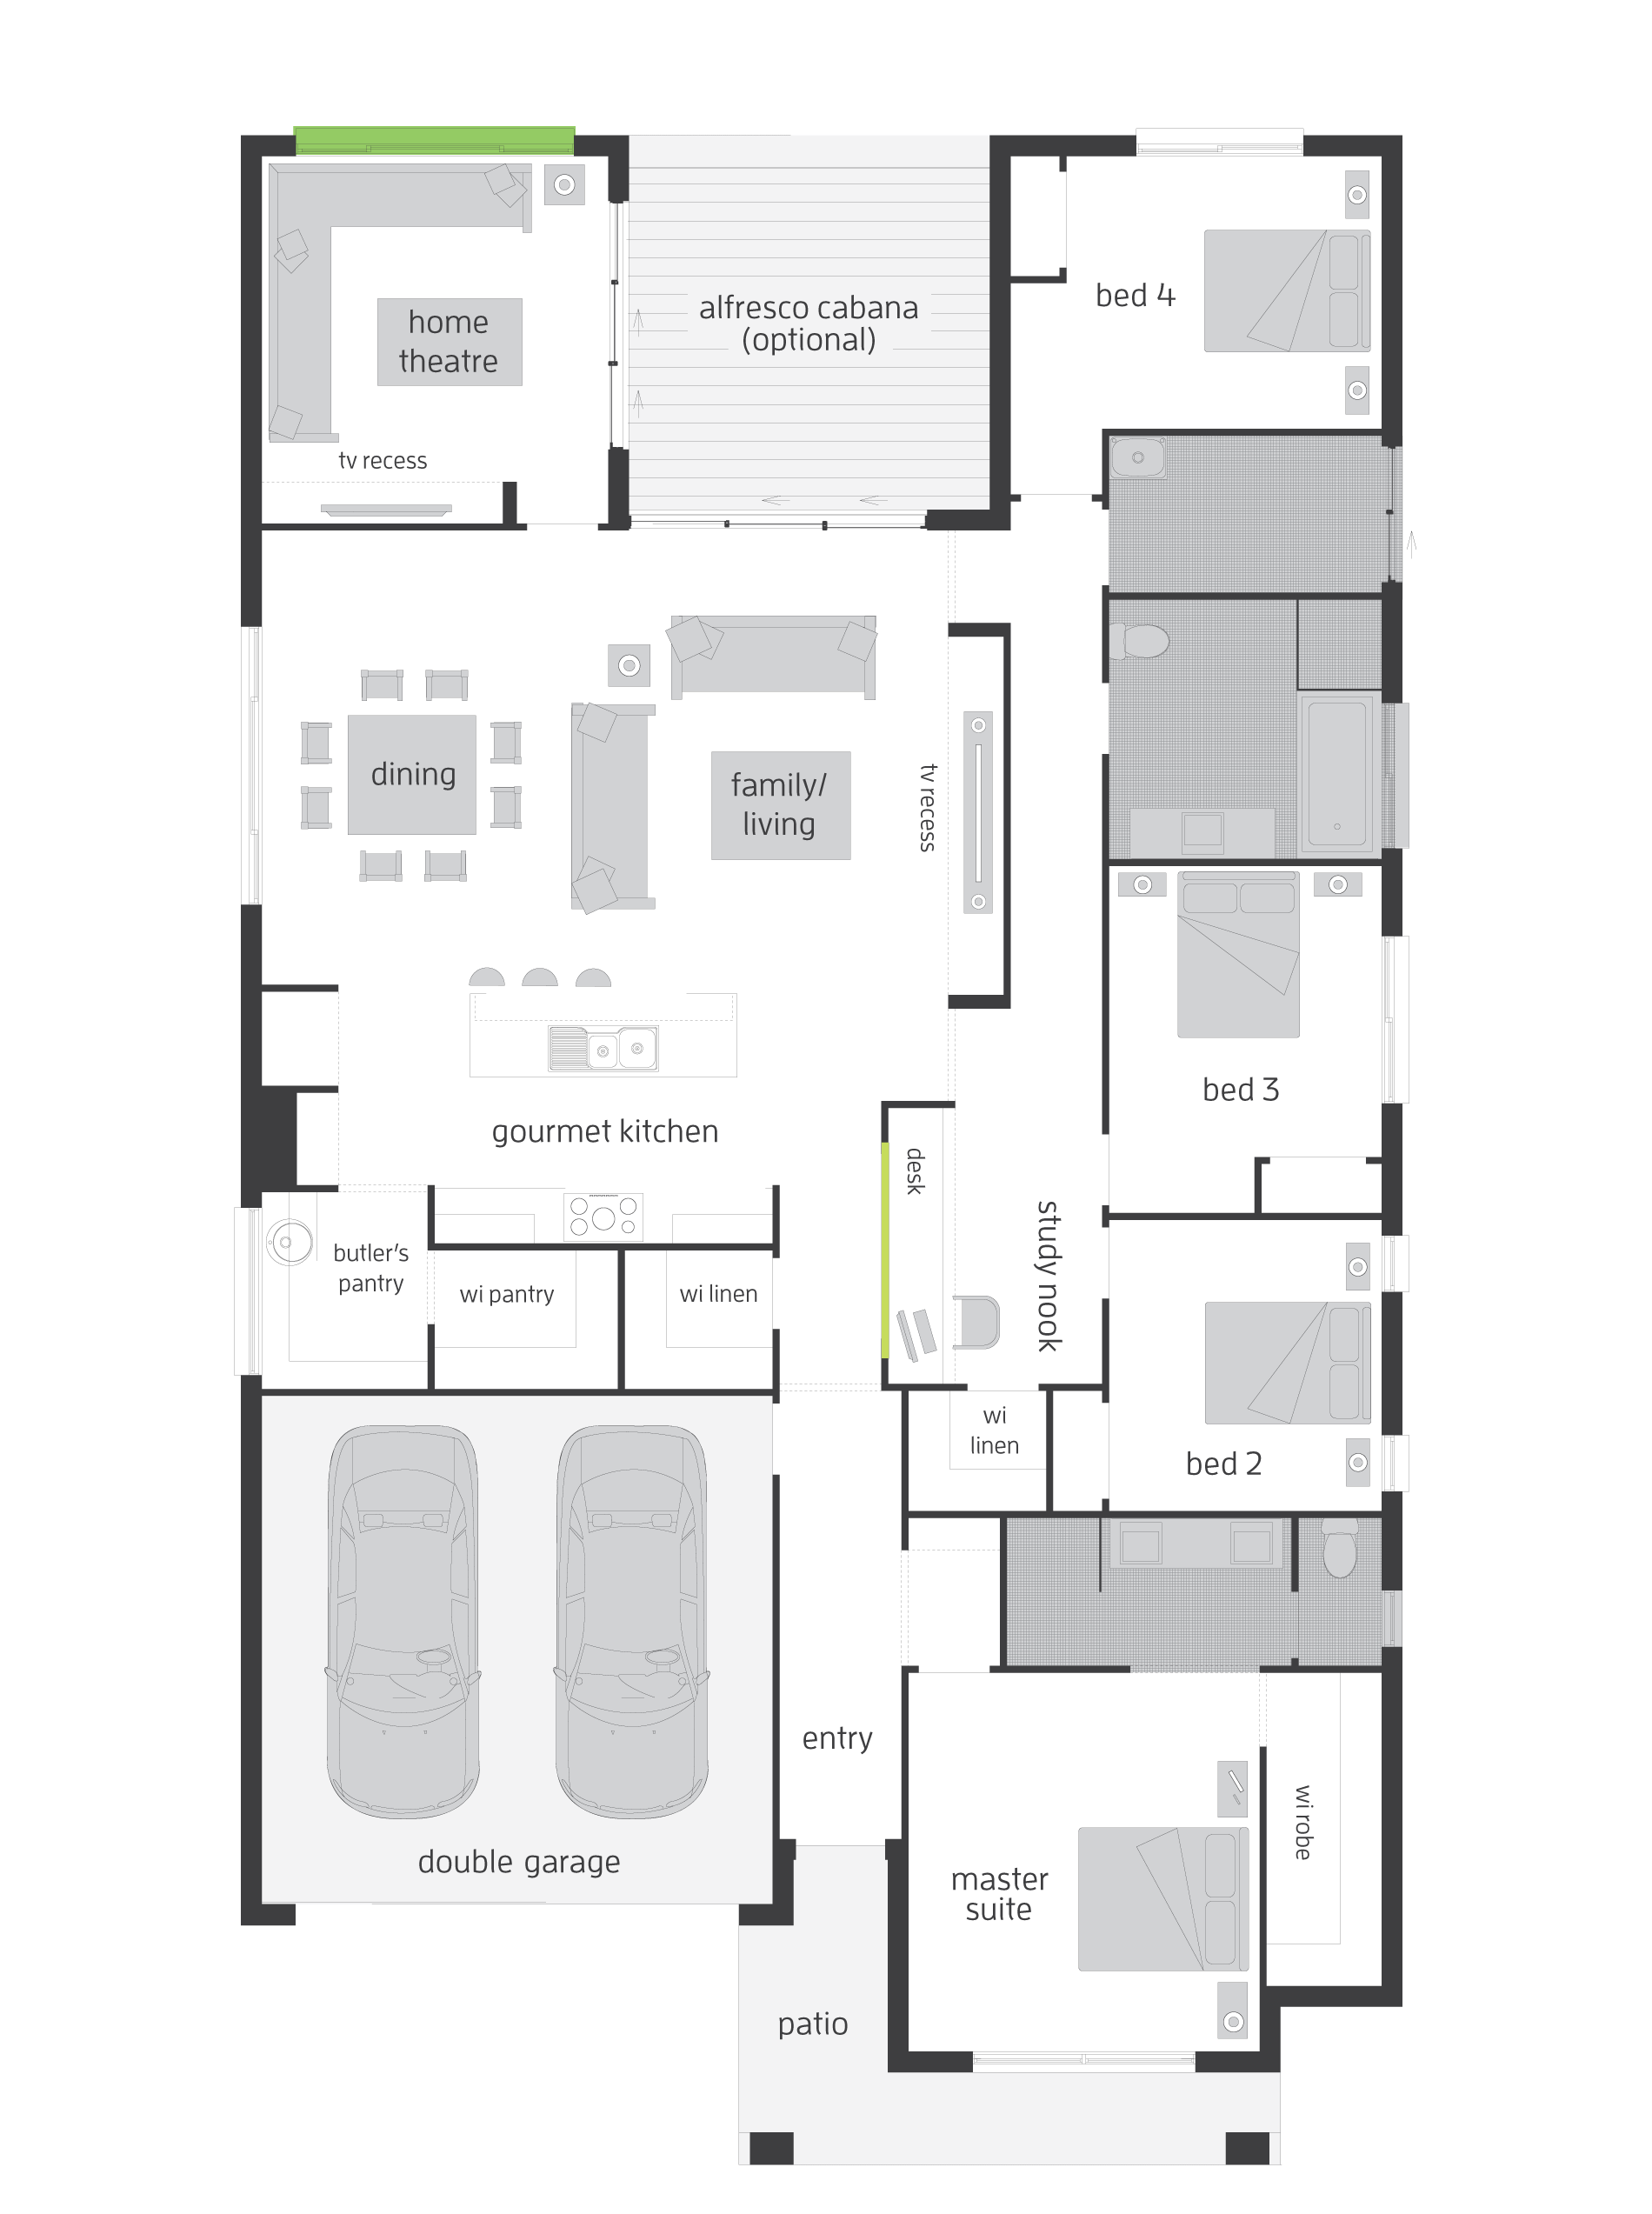 Floor Plan Friday 4 bedroom with theatre, study nook